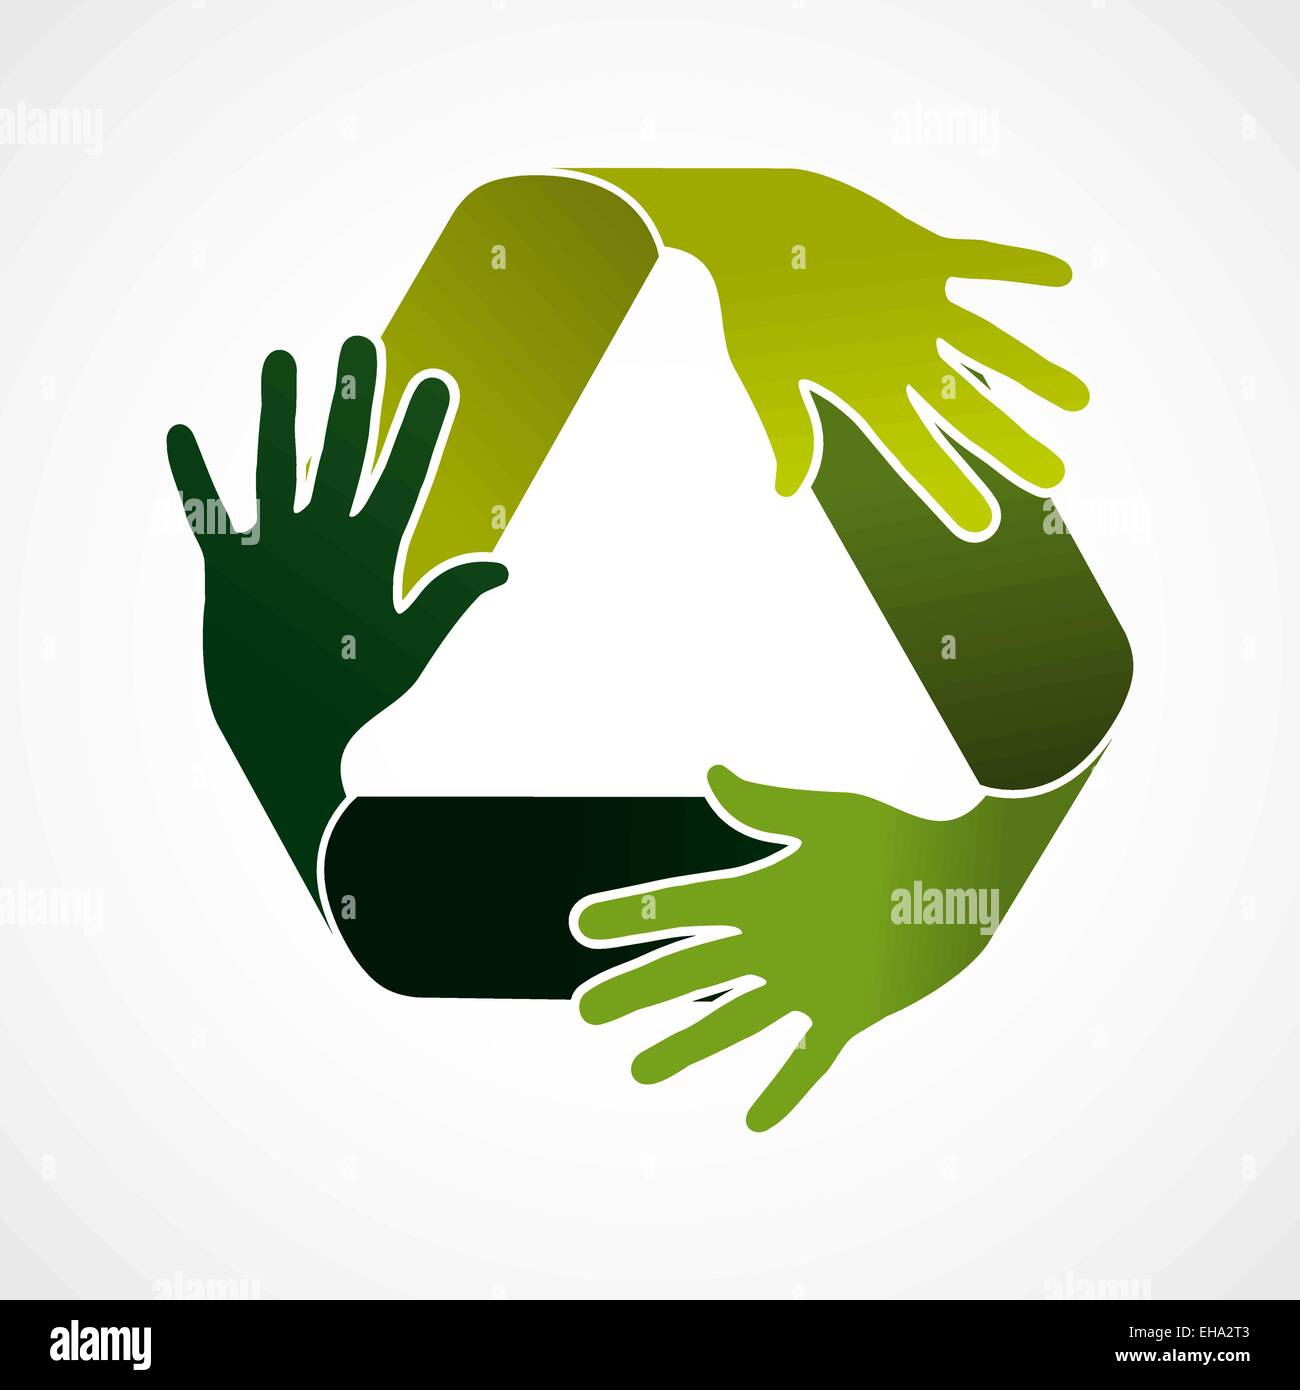 Ökologie und recycling Teamwork Konzept Abbildung. Recycle Symbol mit grünen Händen gemacht. EPS10 Vektor-Datei. Stock Vektor